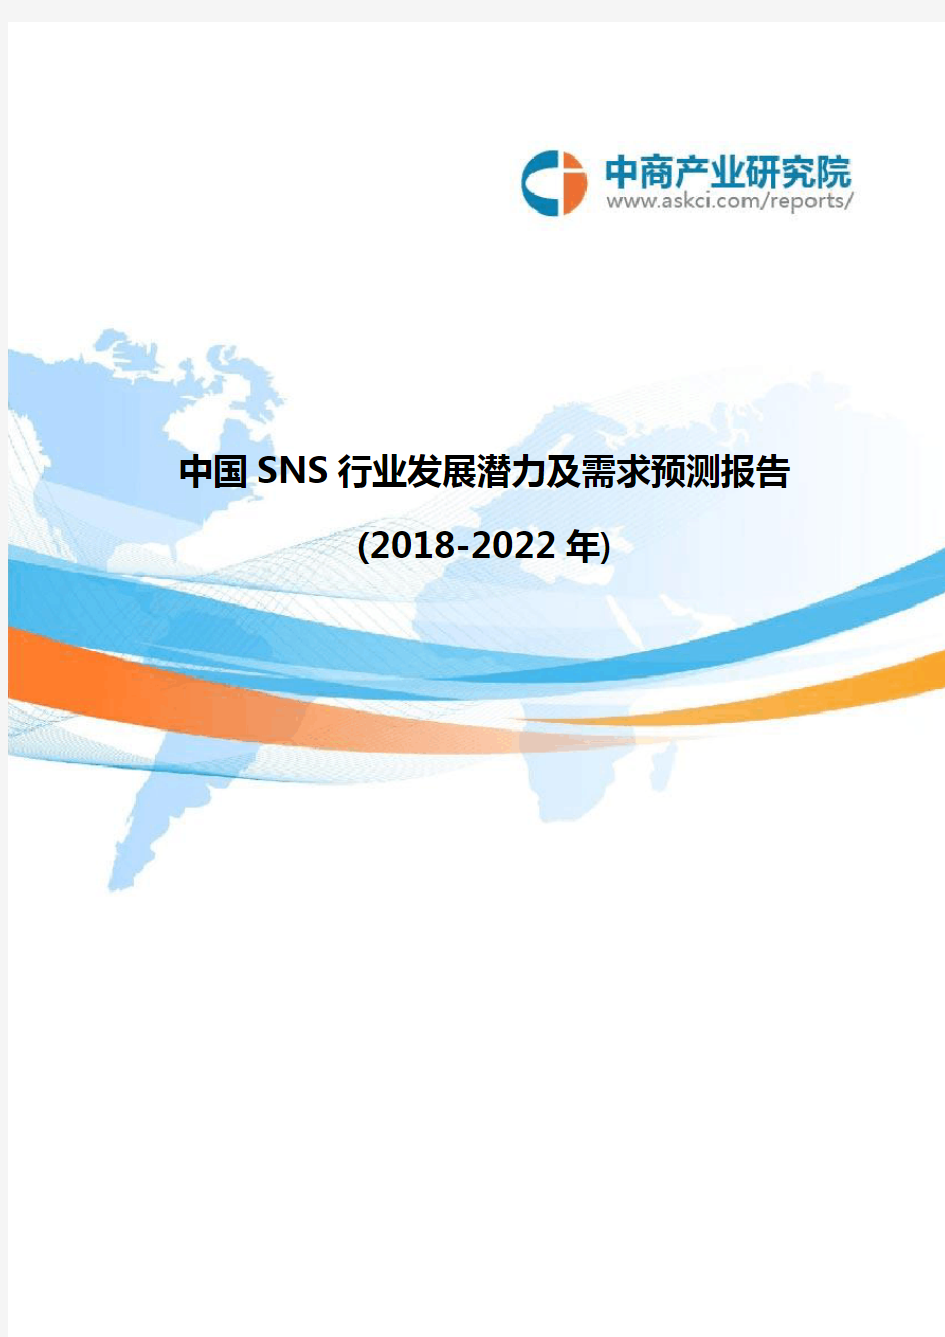 中国SNS行业发展潜力及需求预测报告(2018-2022年)